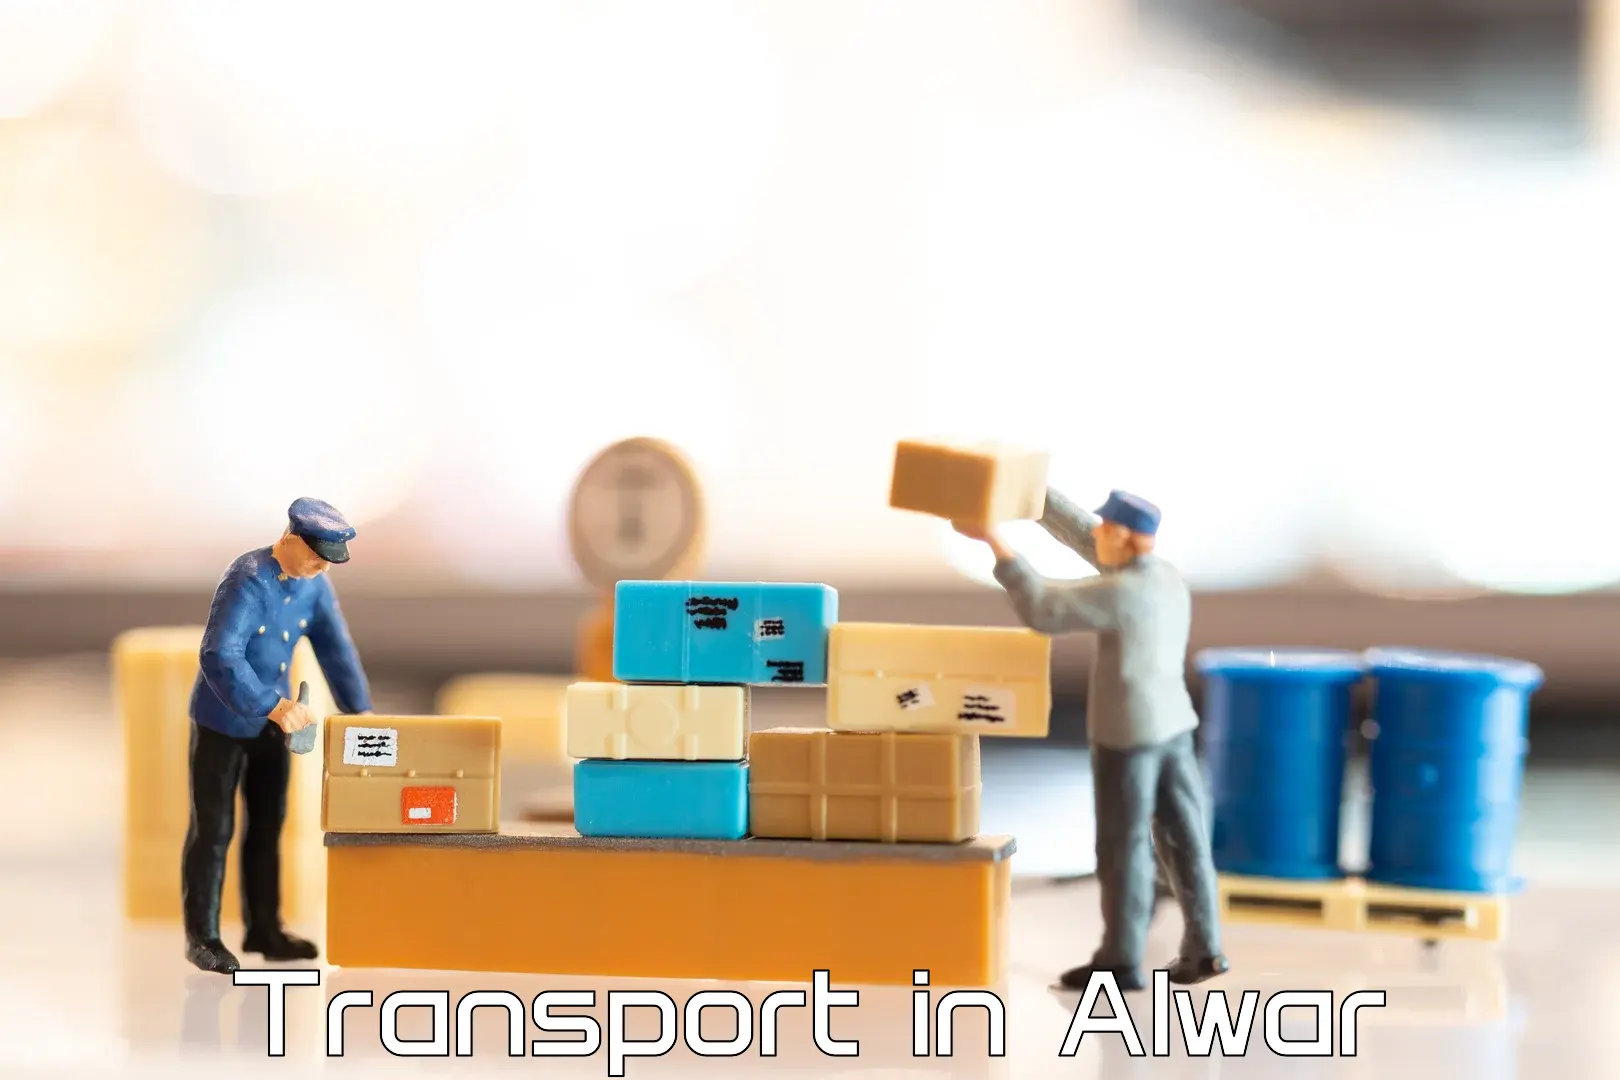 Road transport online services in Alwar